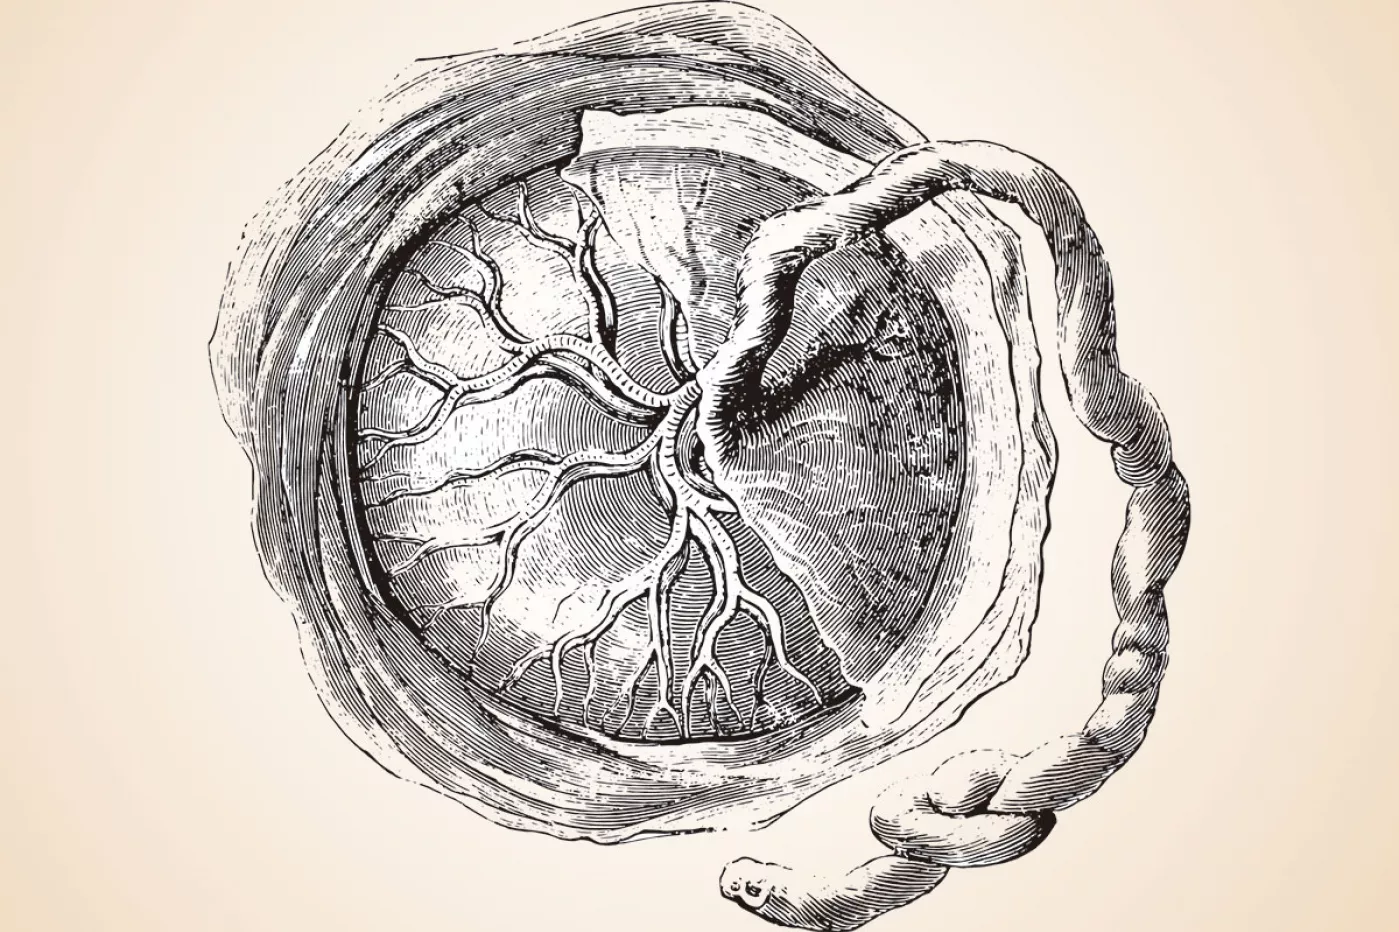 La placenta es un órgano transitorio que se forma durante la gestación; a través de ella tiene lugar el intercambio de nutrientes entre la madre y el feto.